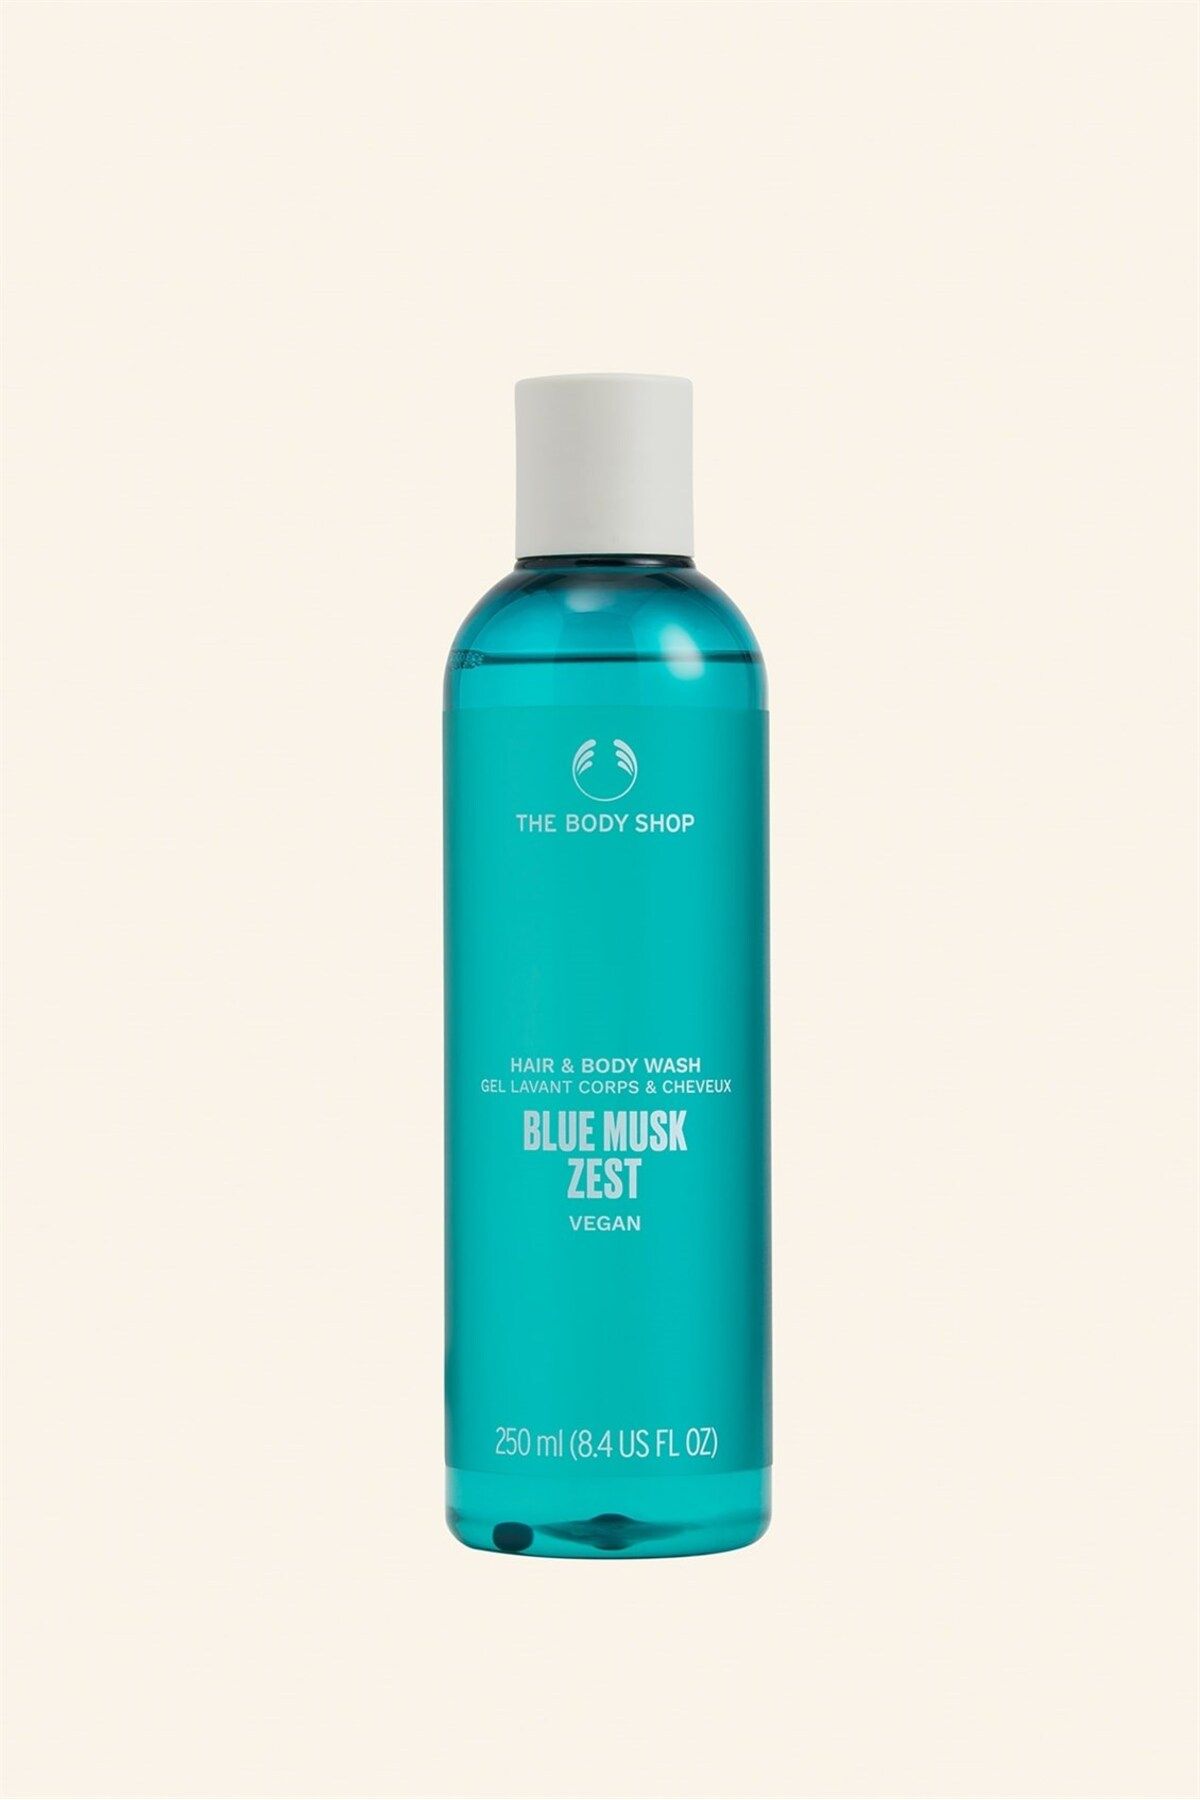 THE BODY SHOP Blue Musk Zest Saç Ve Vücut Şampuanı 250 ml